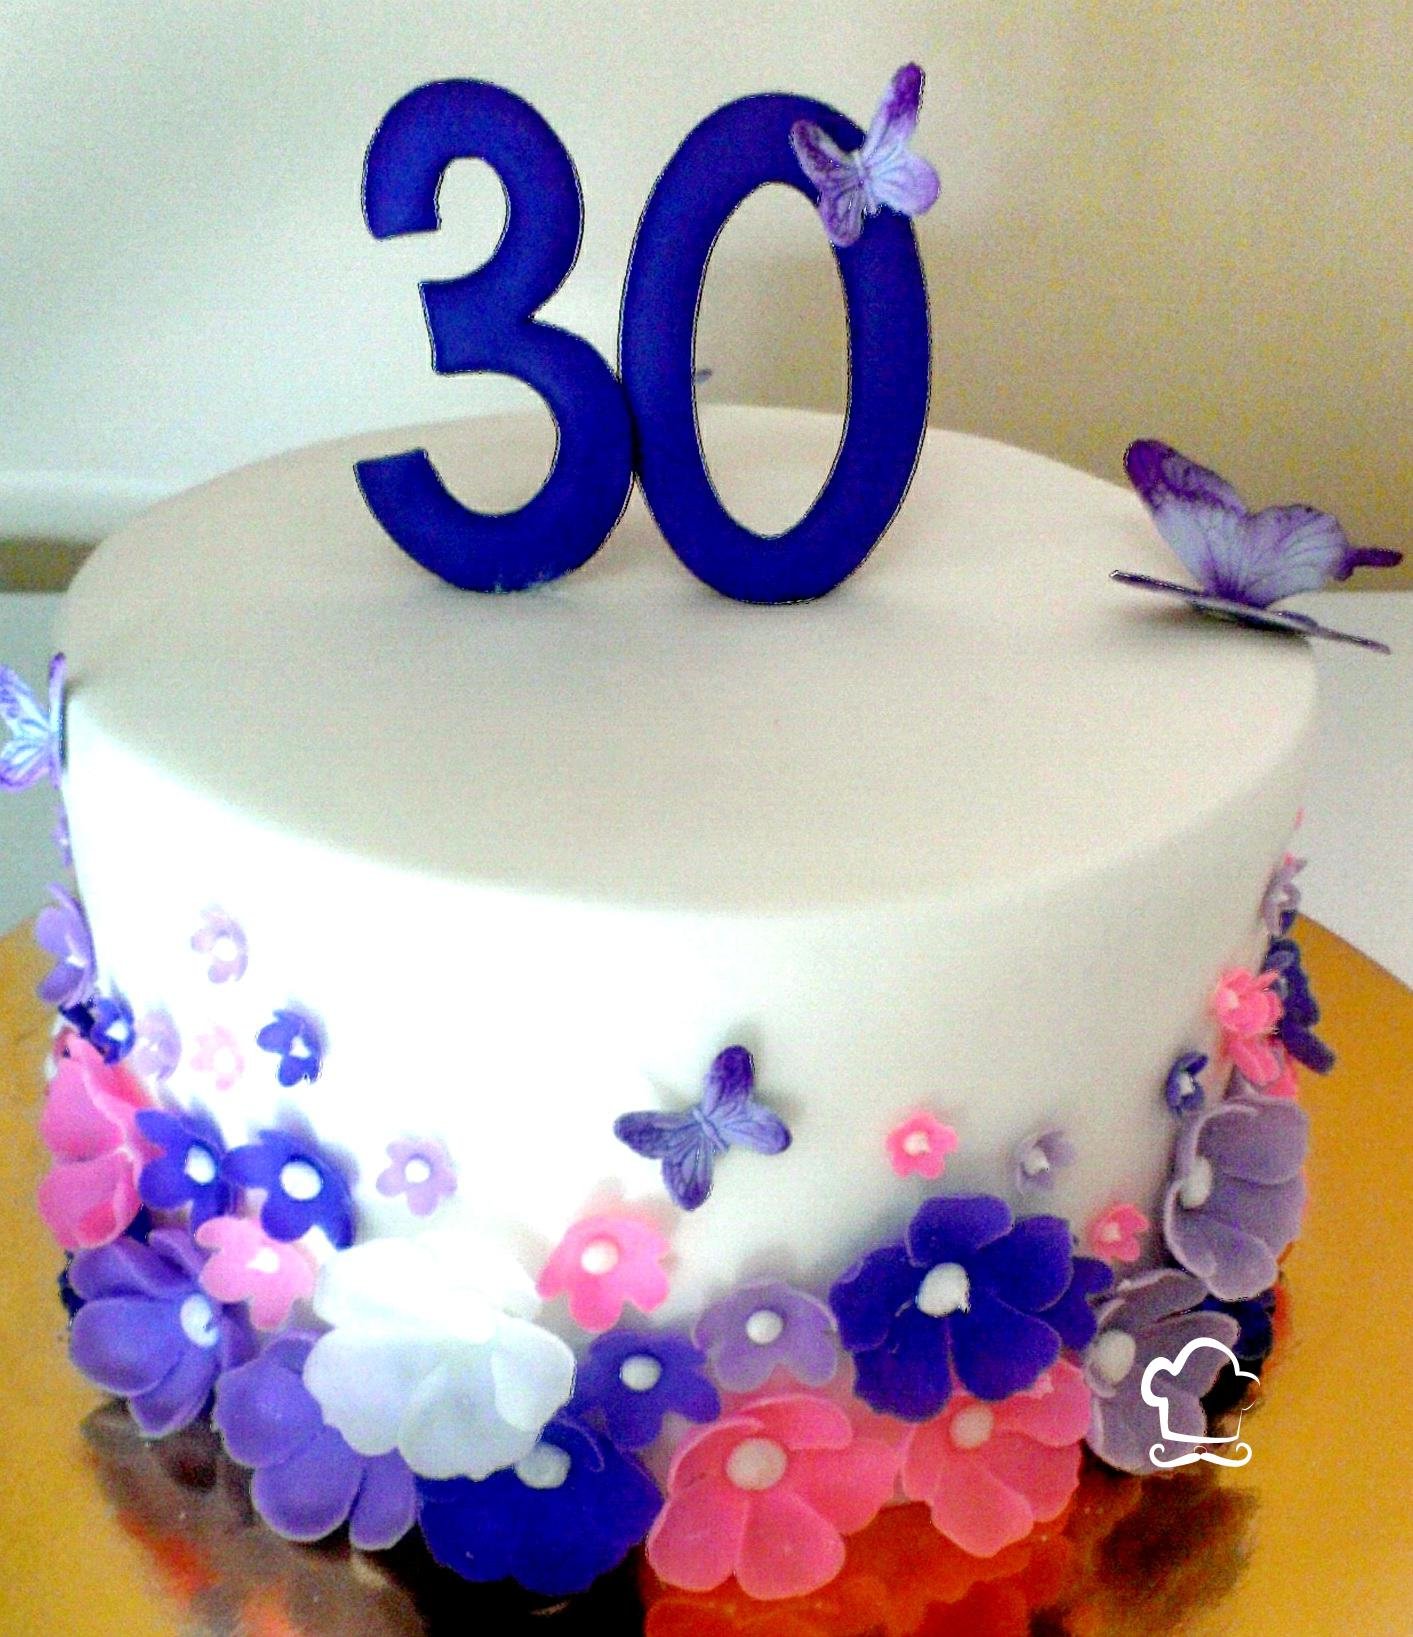 30 лет самой себе. Красивый торт на день рождения 30 лет. Торт на день рождения 30 лет девушке. Торт 30 лет девушке красивый на день рождения. Украшение торта на юбилей 30 лет девушке.